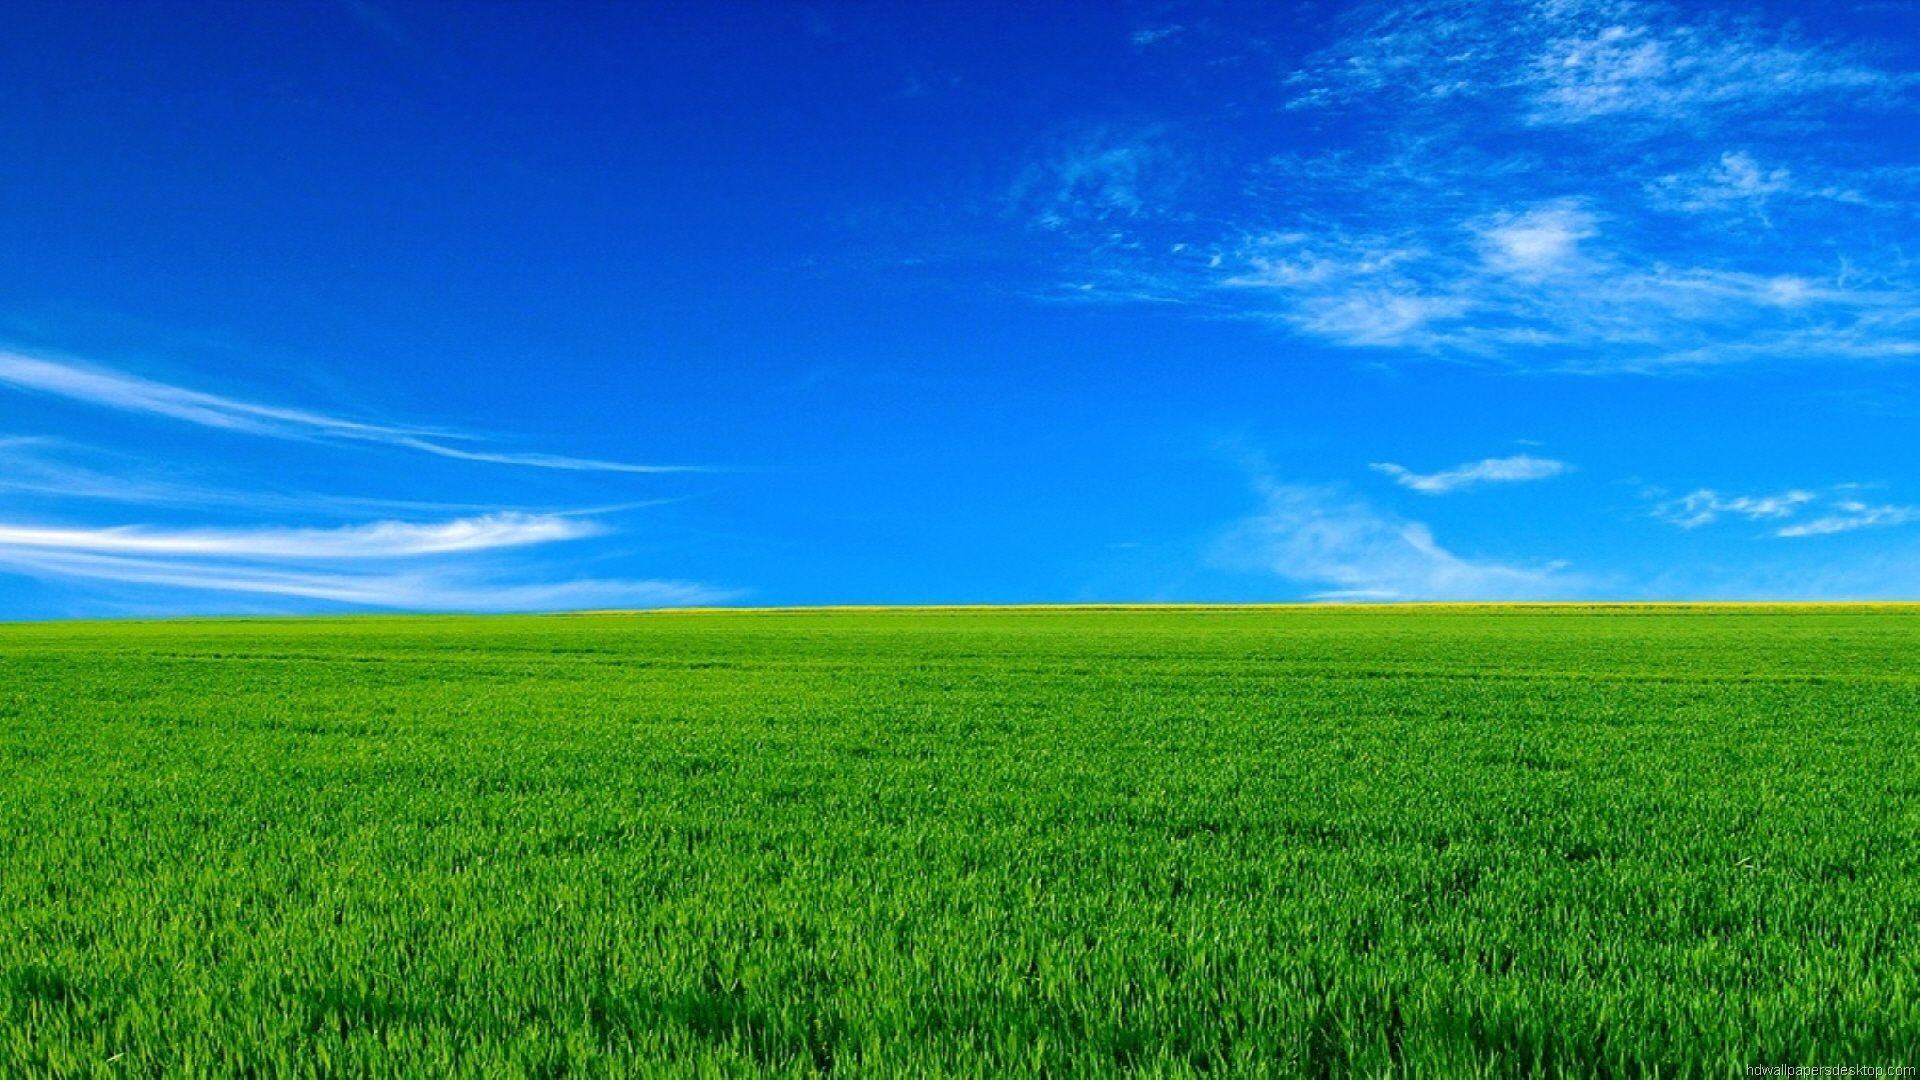 Hình nền cỏ xanh đẹp mênh mông đầy sức sống nhất